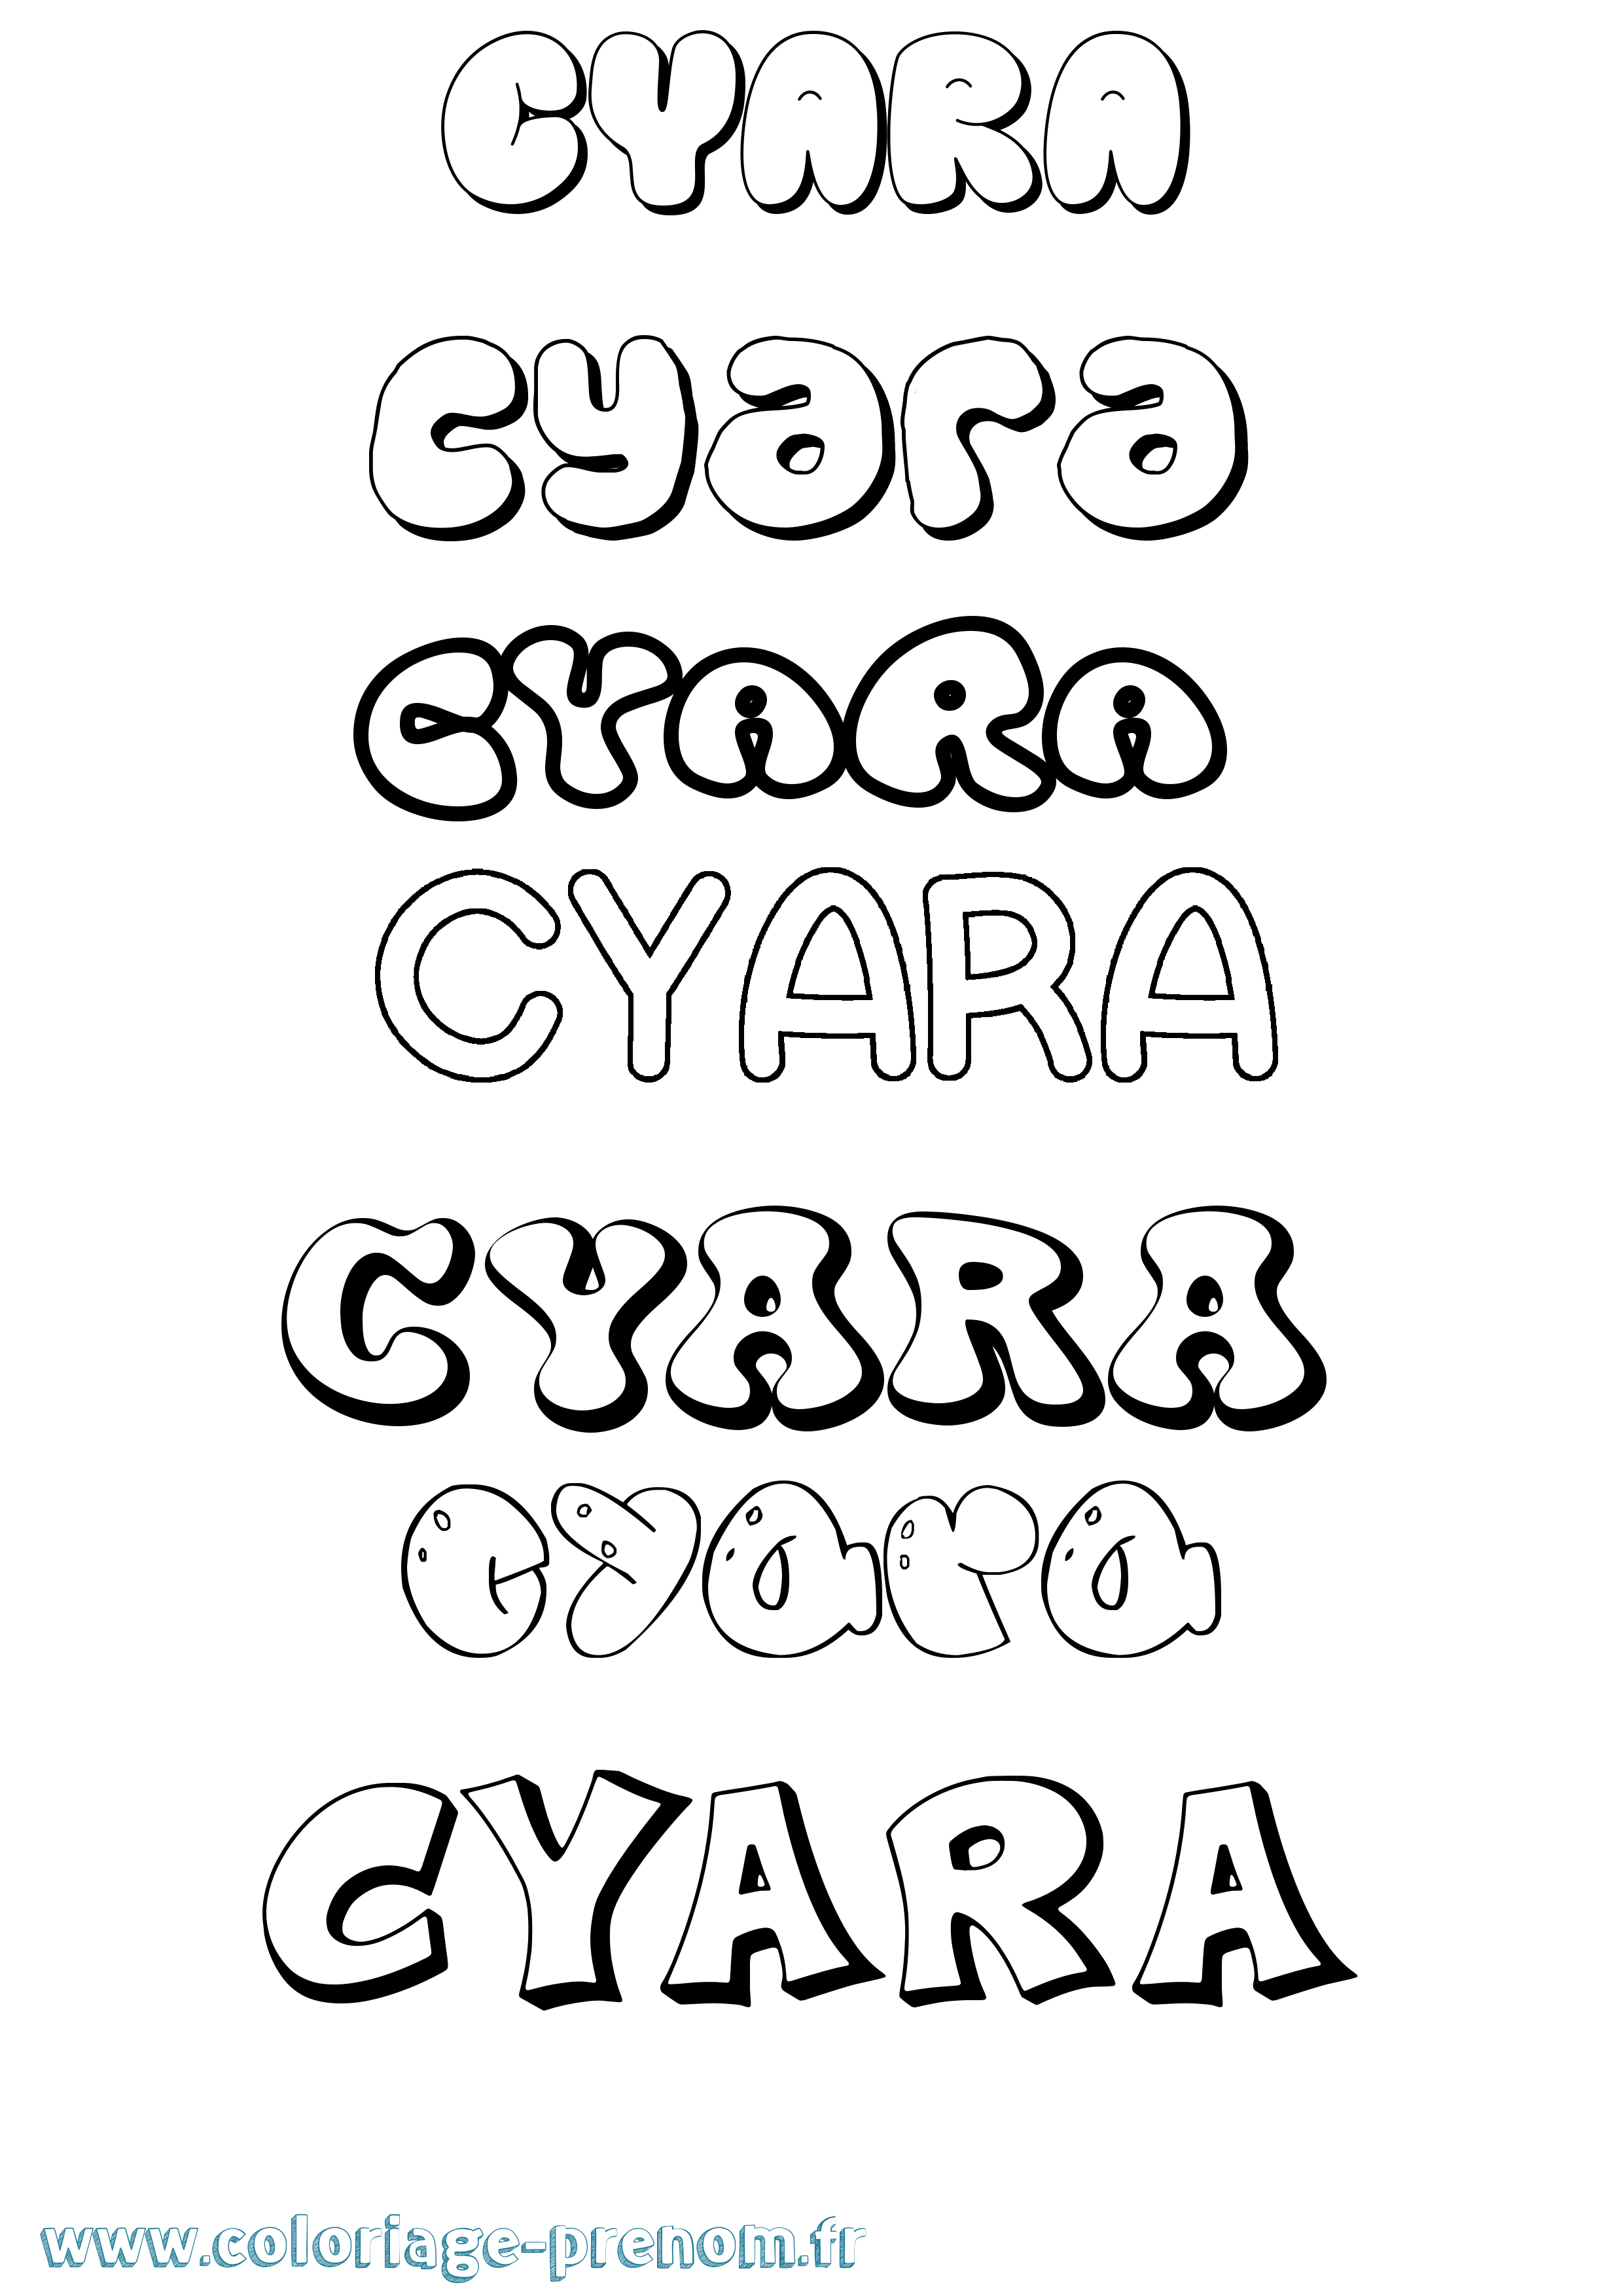 Coloriage prénom Cyara Bubble